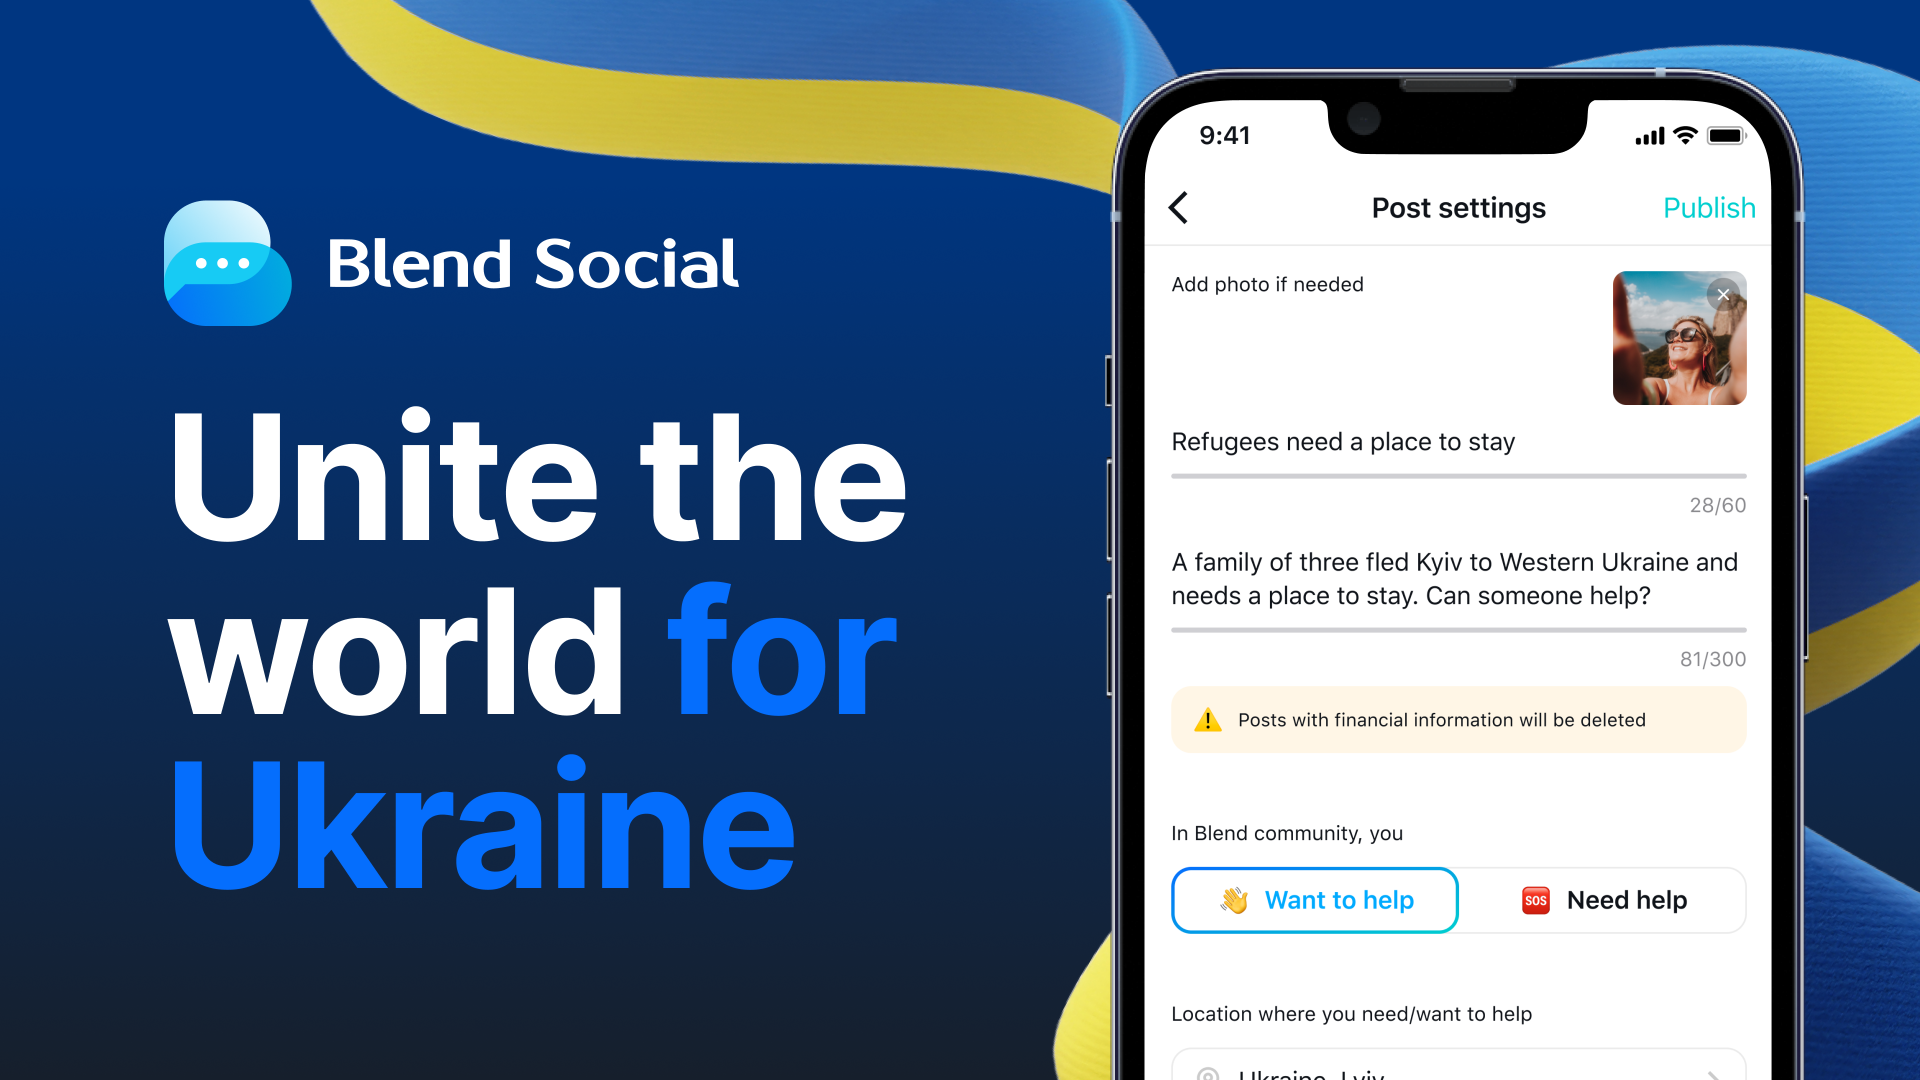 Blend Social: Unite the world for Ukraine